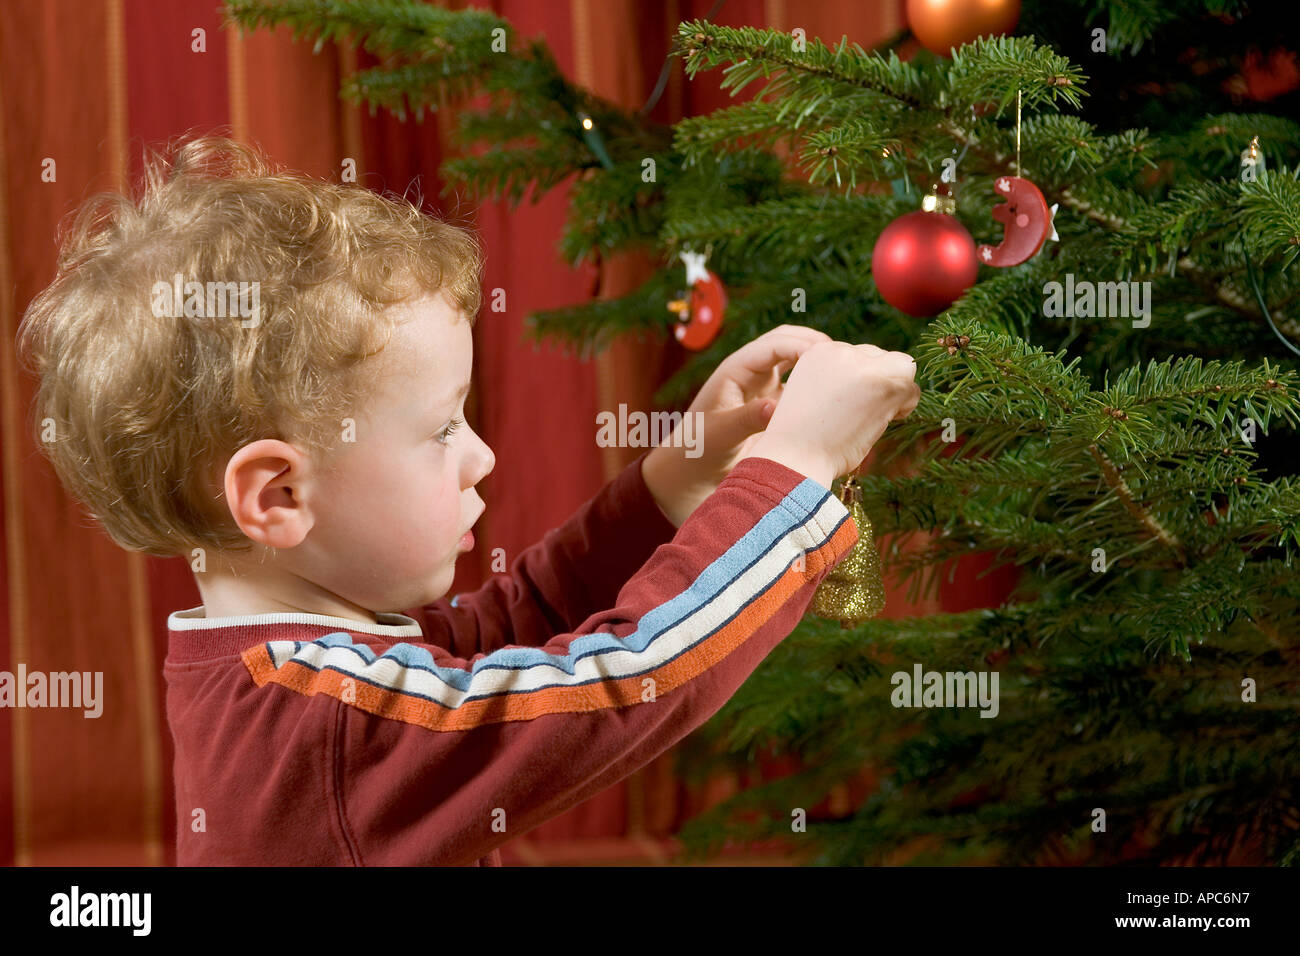 Ein kleiner Junge ist der Weihnachtsbaum schmücken. Stockfoto